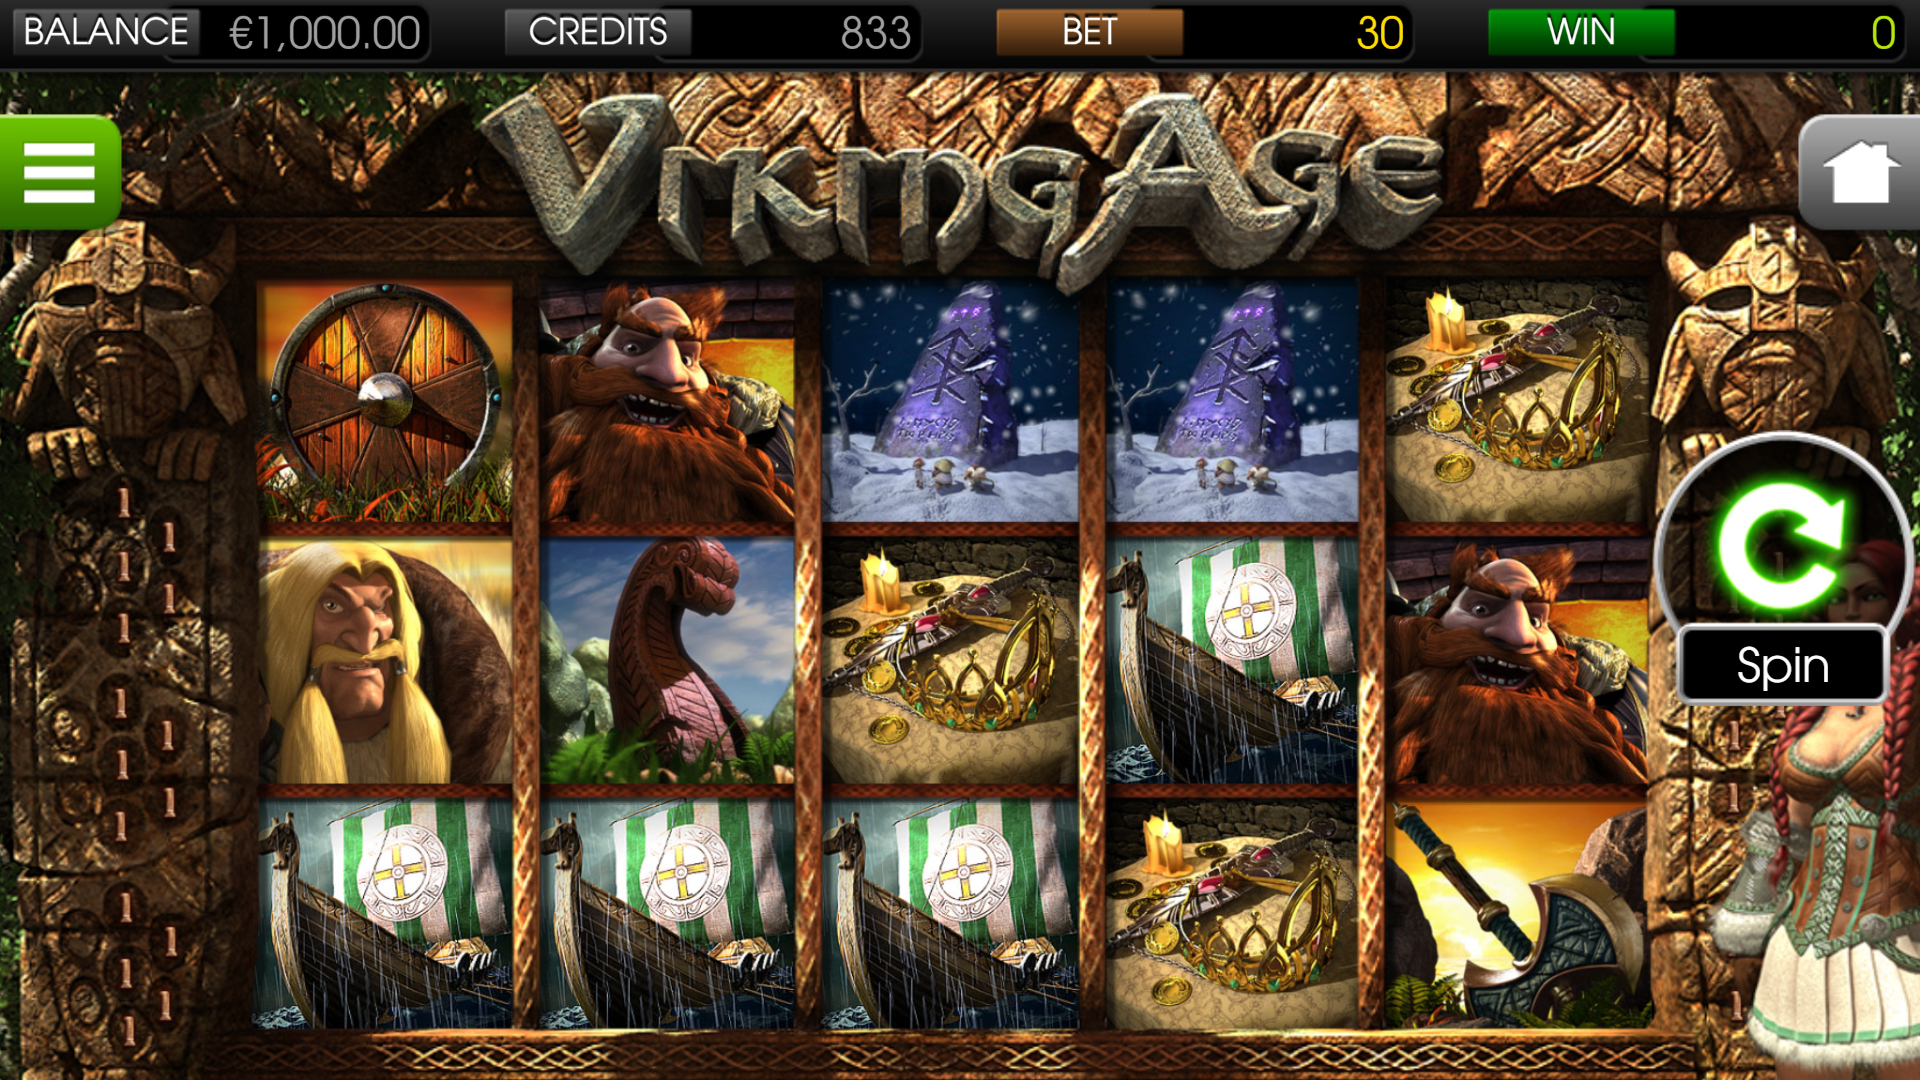 Viking Age - Main Game